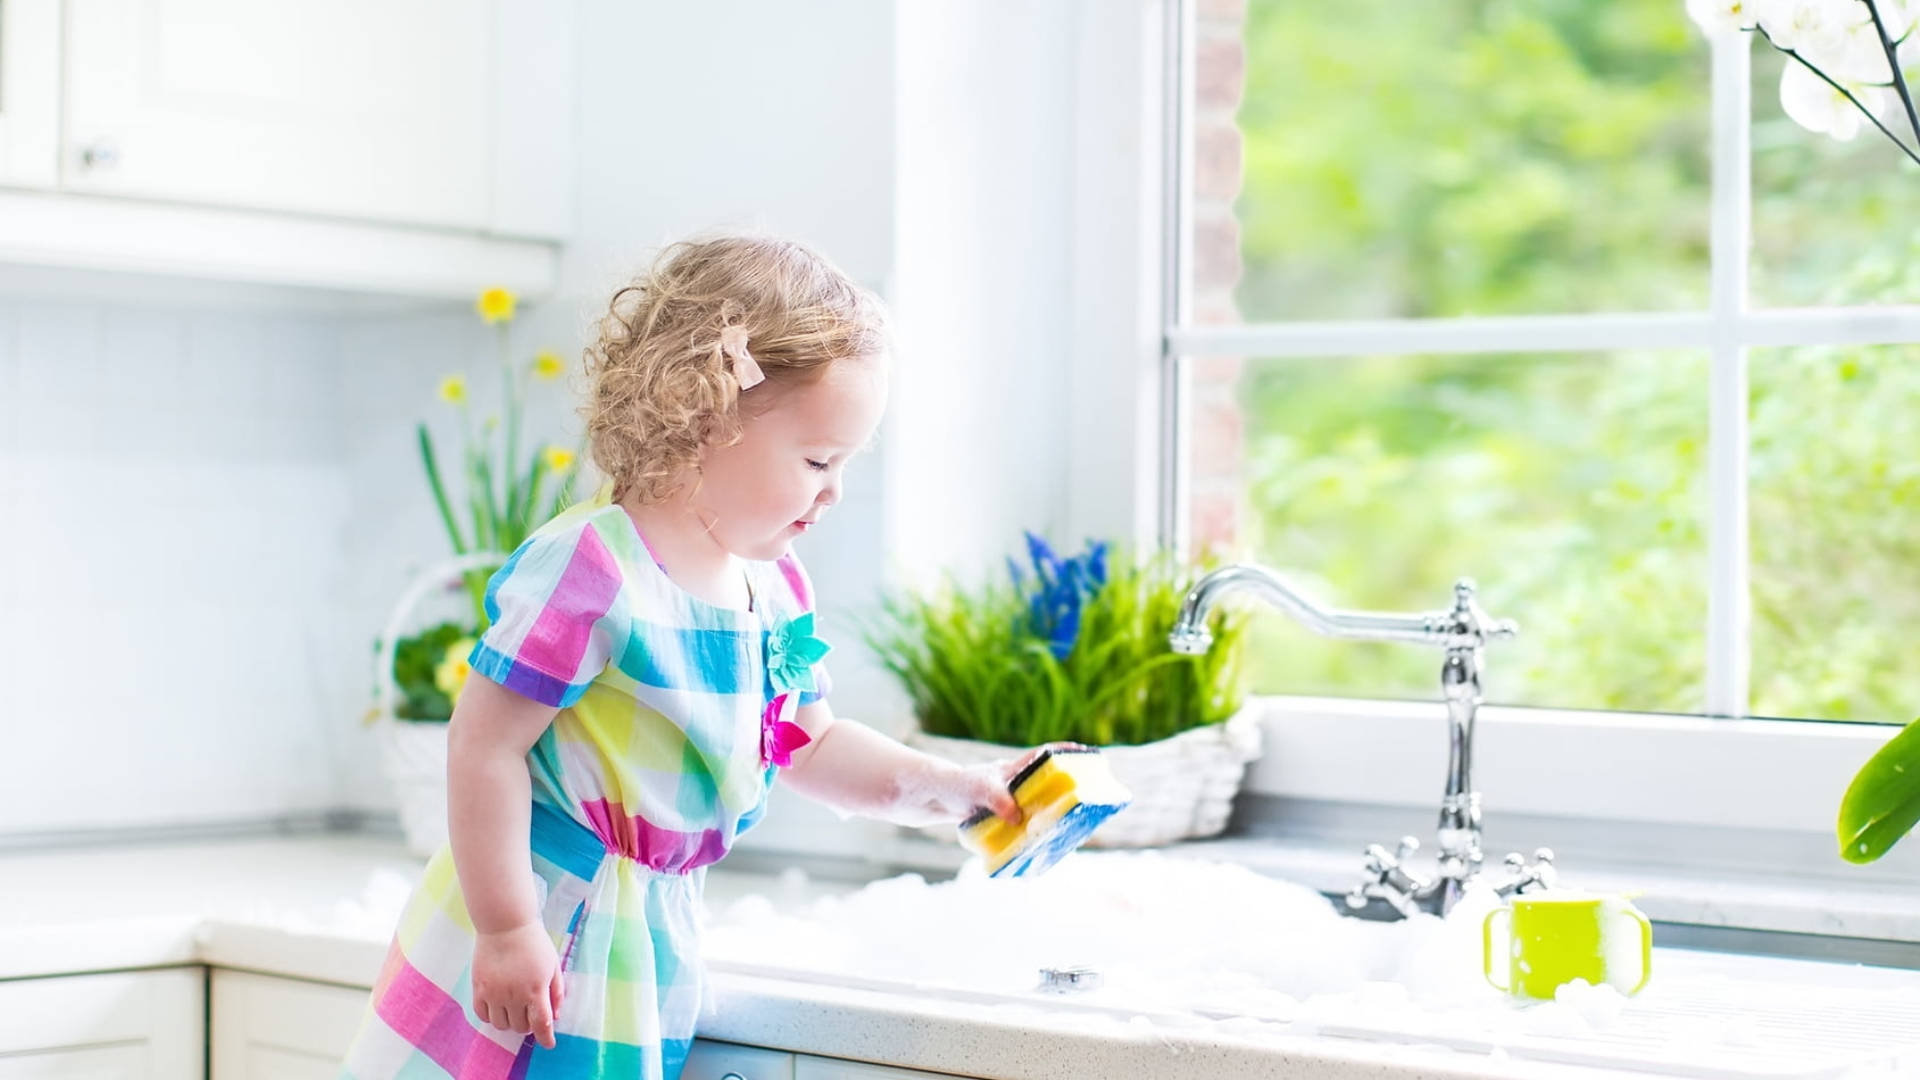 Criançalavando Pratos - Limpeza Da Casa. Papel de Parede